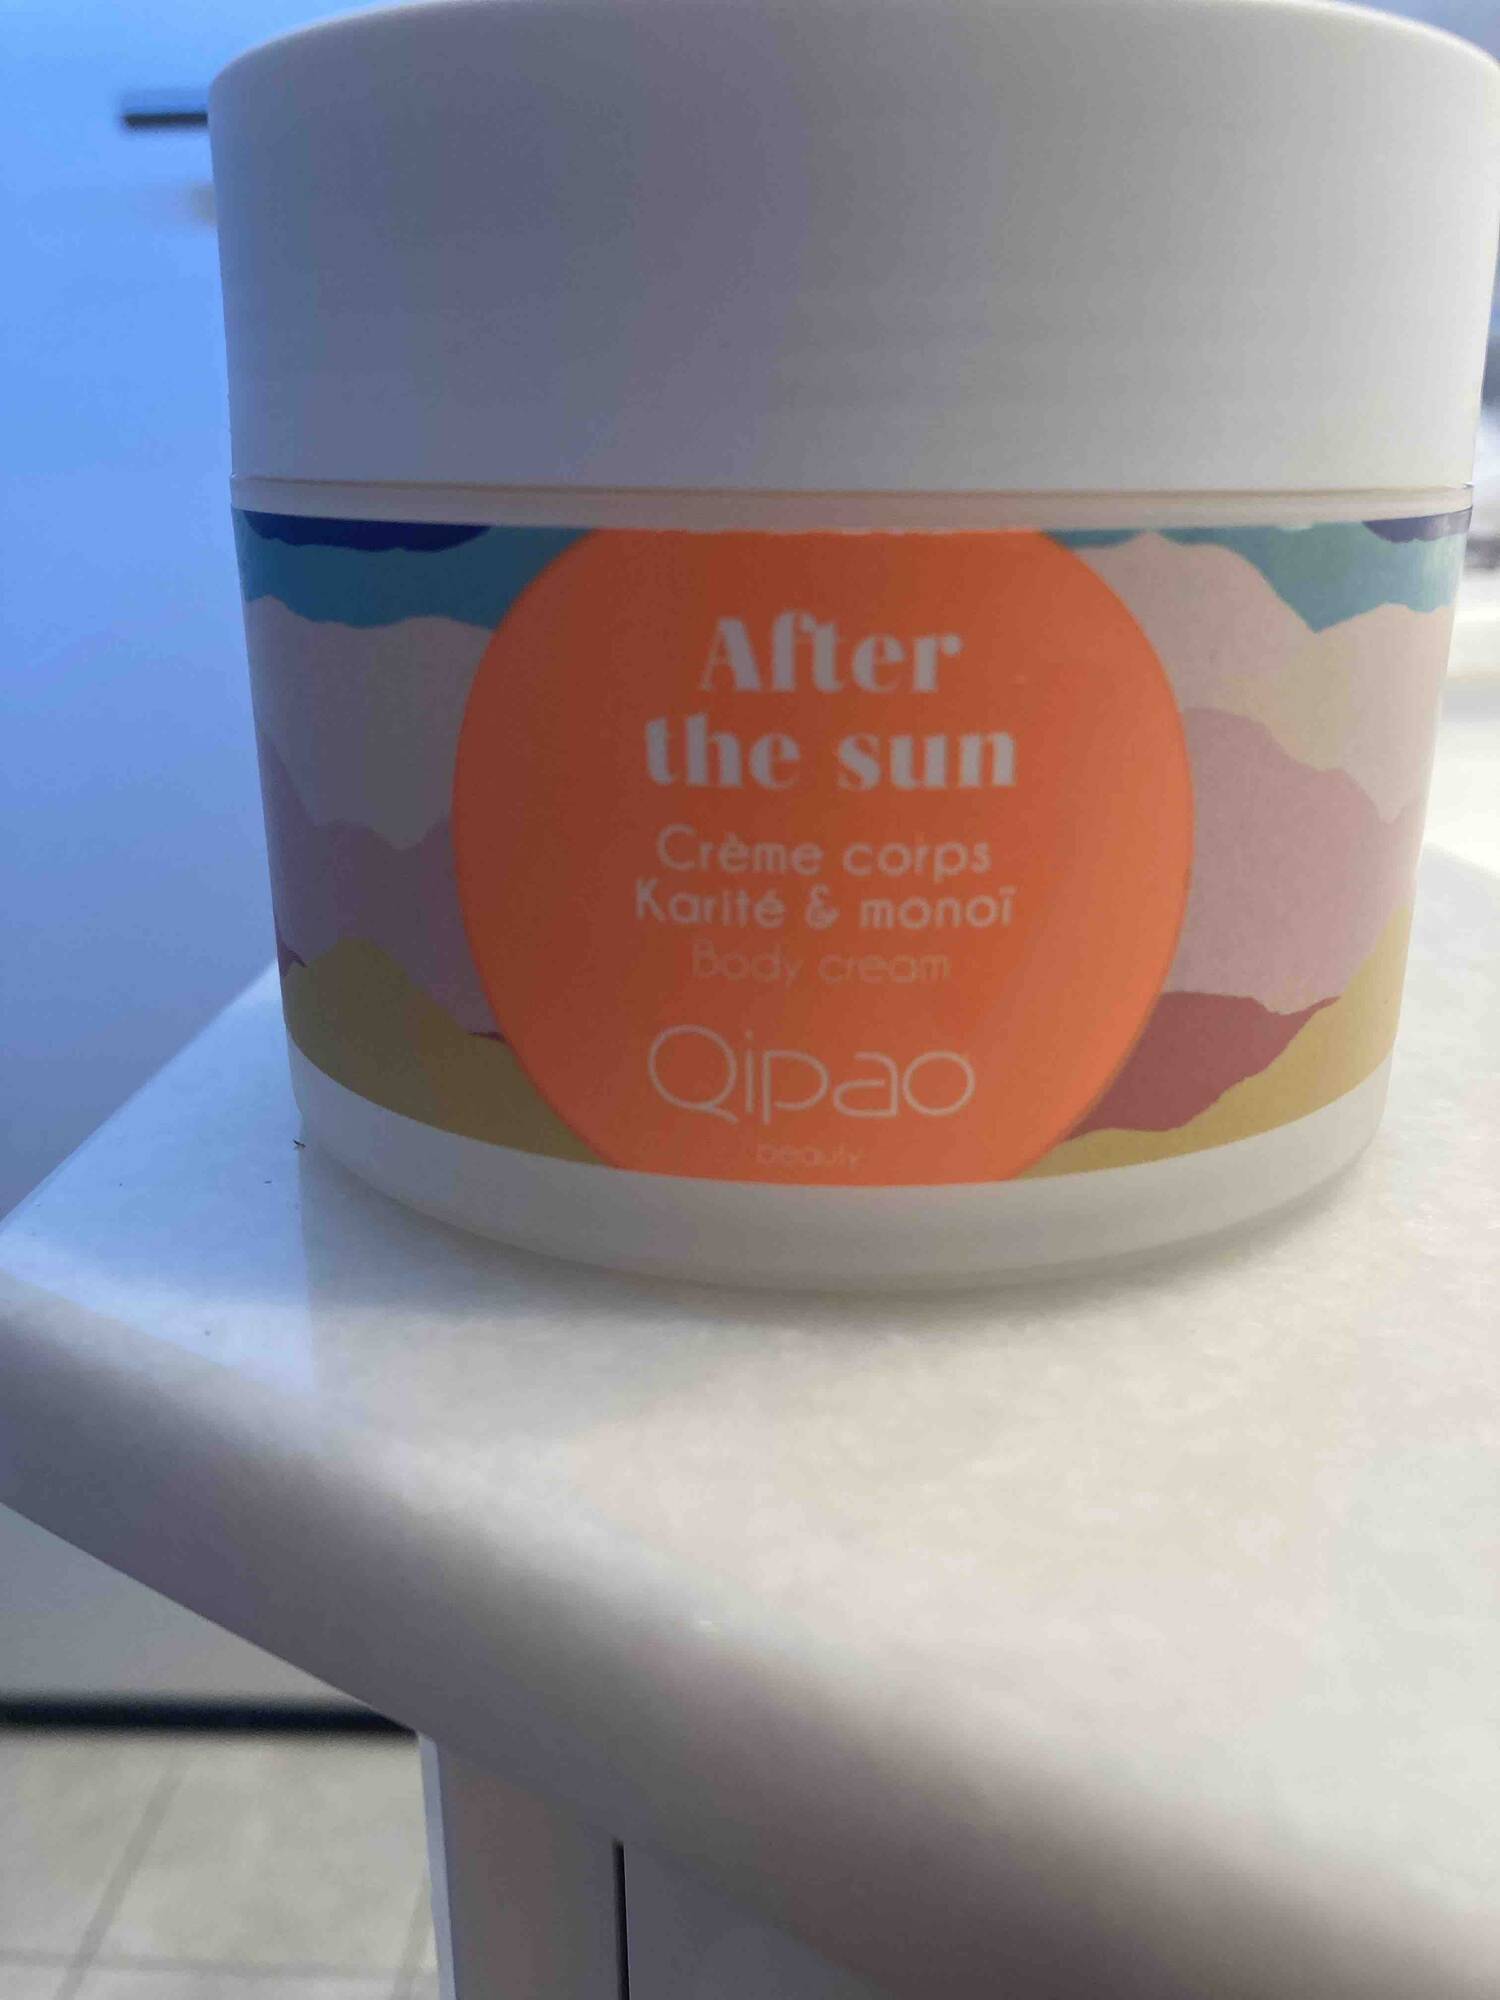 QIPAO - After the sun - Crème corps karité & monoï